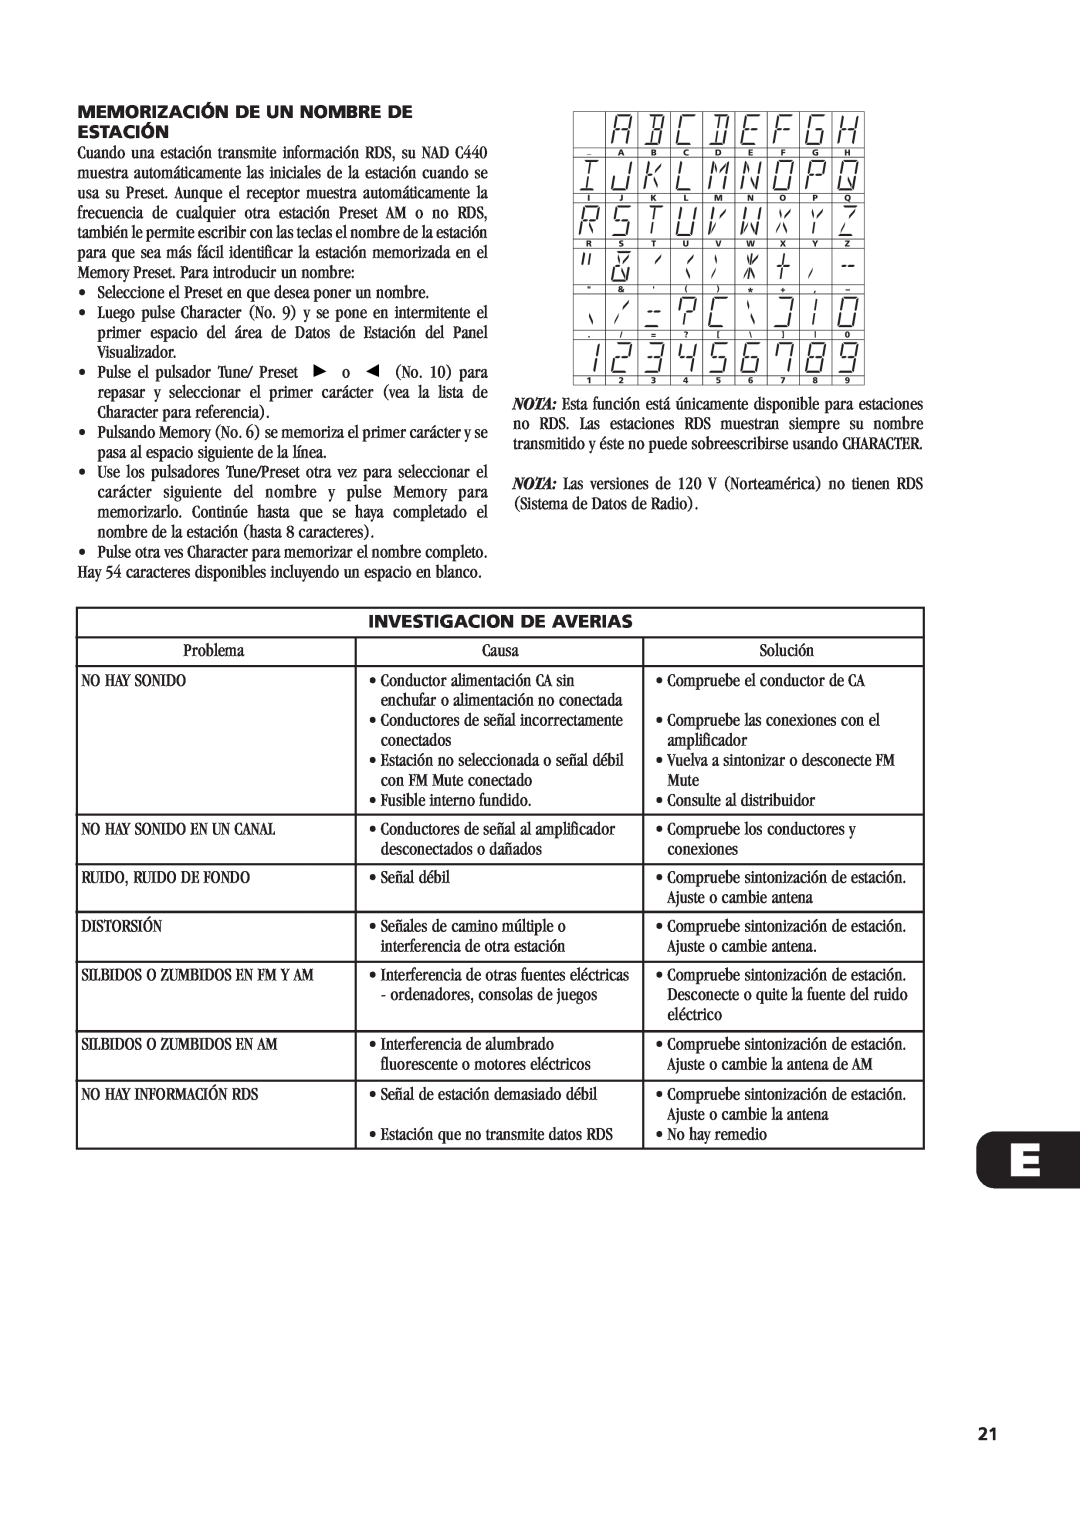 NAD C440 owner manual Memorización De Un Nombre De Estación, Investigacion De Averias 